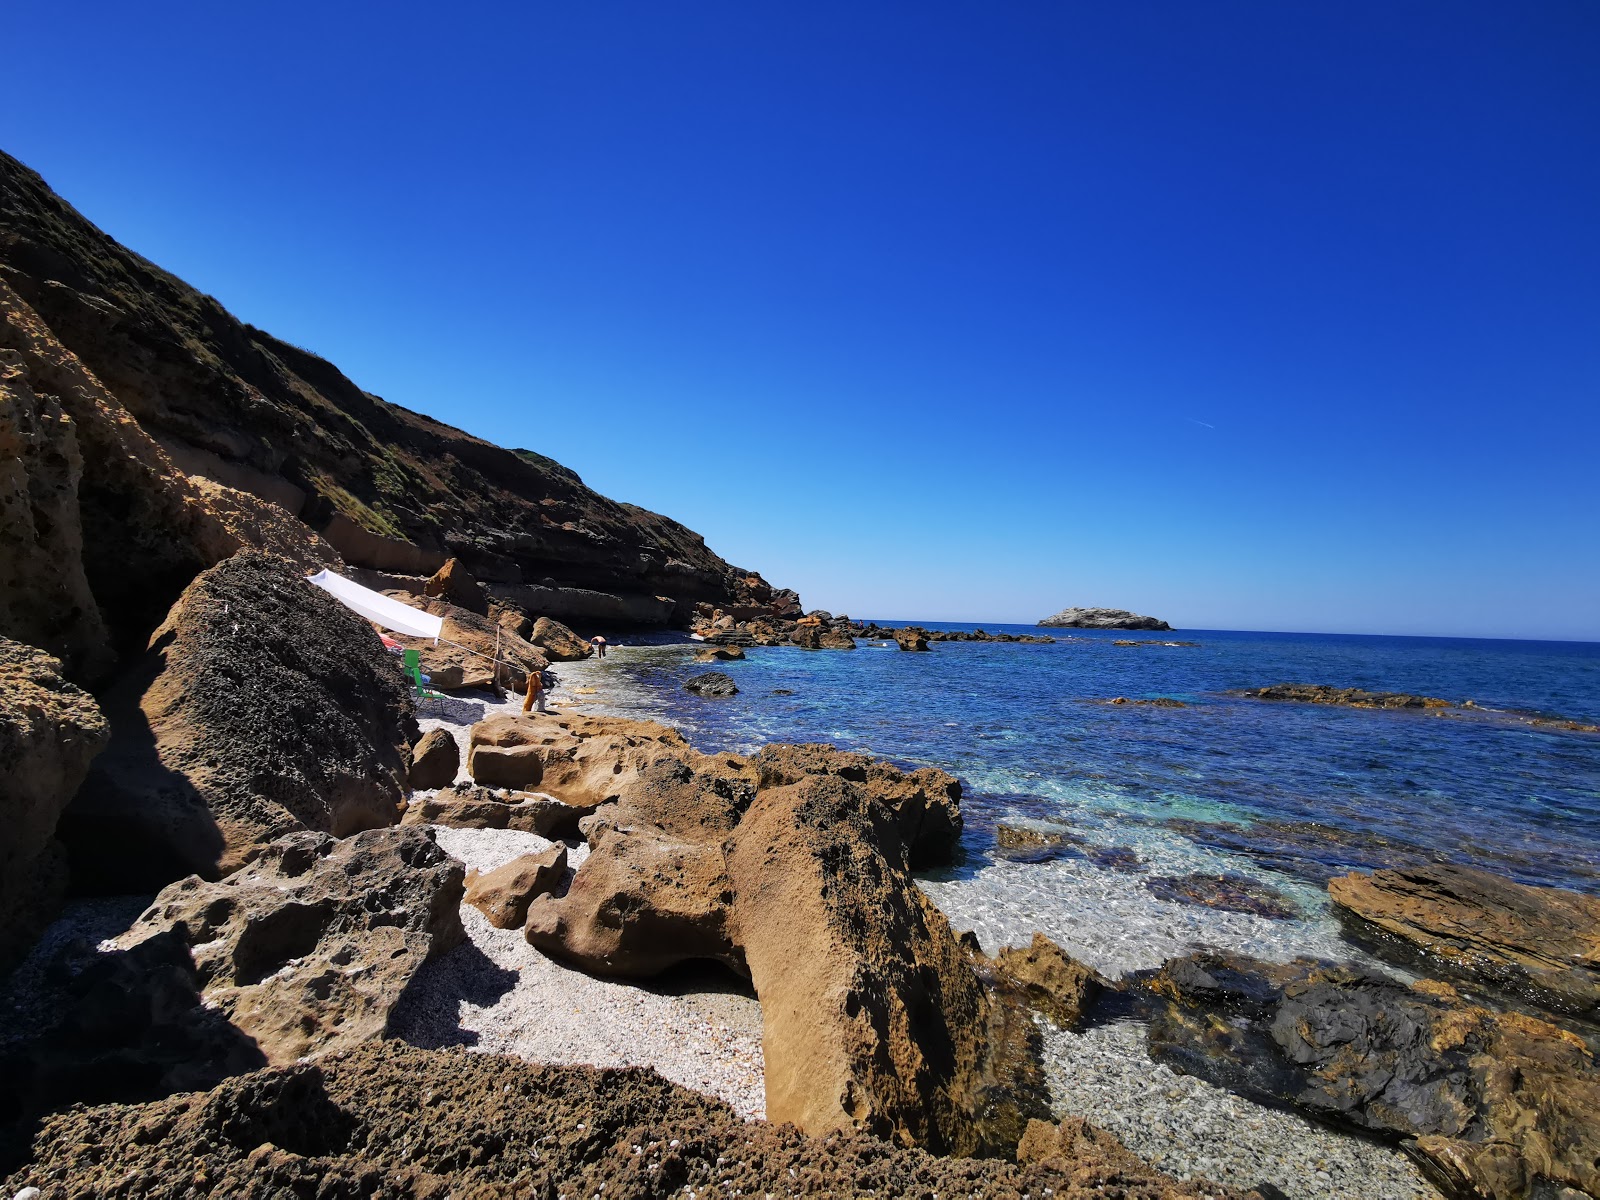 Fotografija Spiaggia Di Rena Majore in njegova čudovita pokrajina